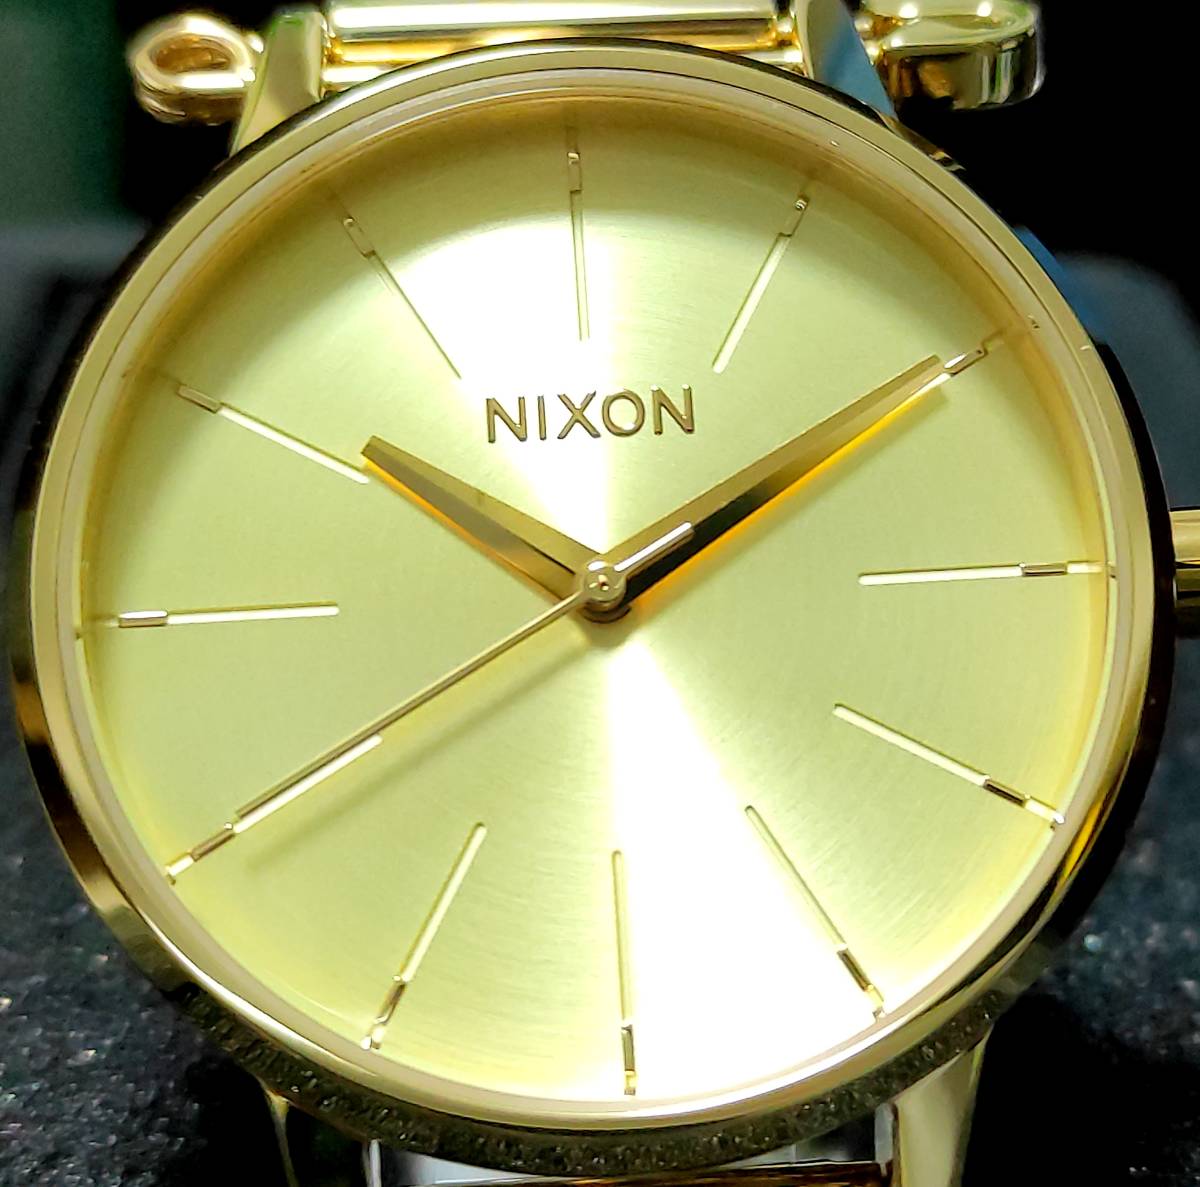 [ новый товар ]NIXON Nixon наручные часы KENSINGTON MILANESE kensington Mira ne-ze желтое золото очень редкий мертвый запас UNISEX